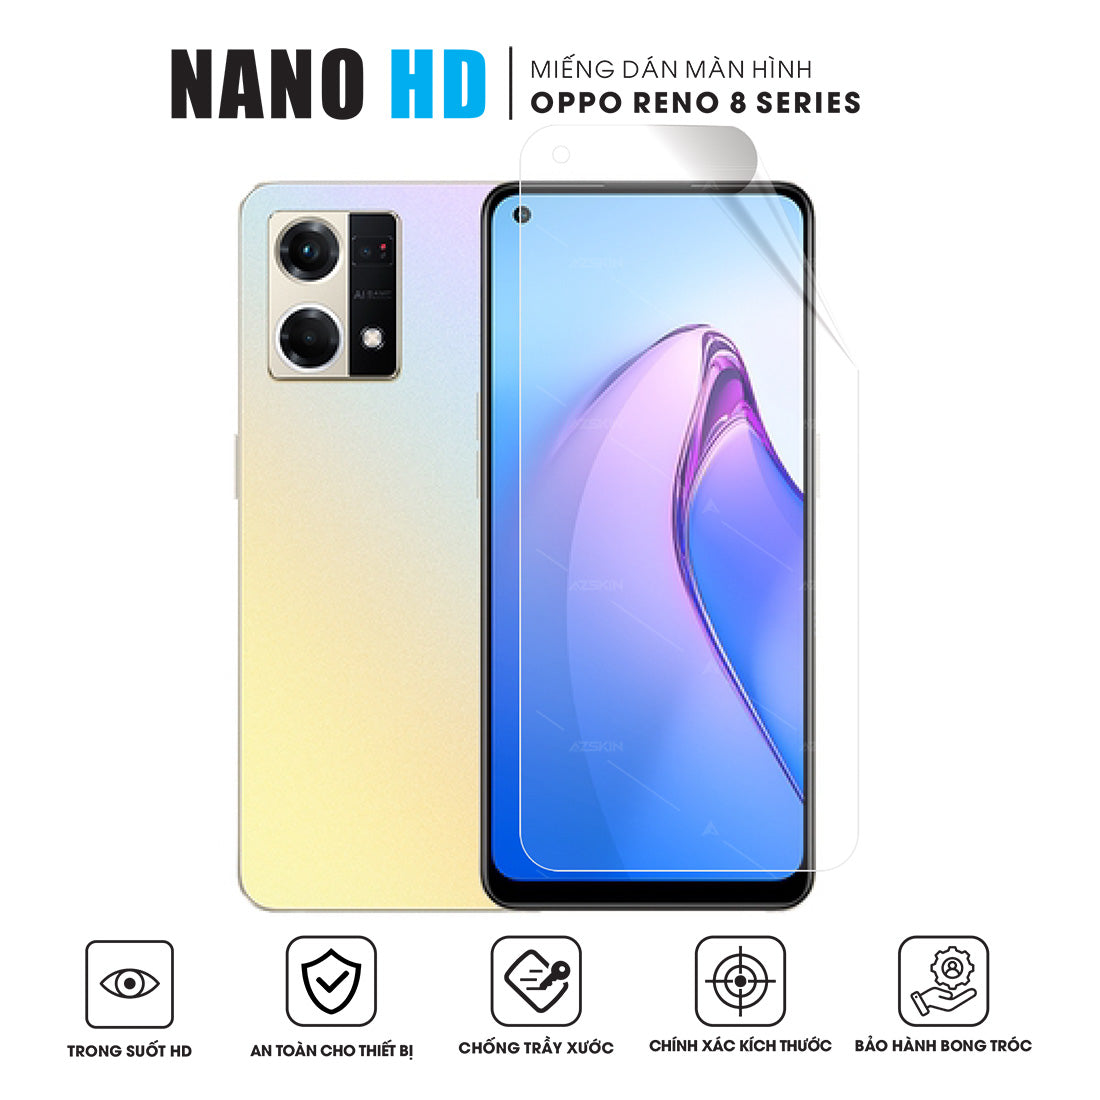 Miếng dán màn hình điện thoại OPPO Reno8 Nano HD